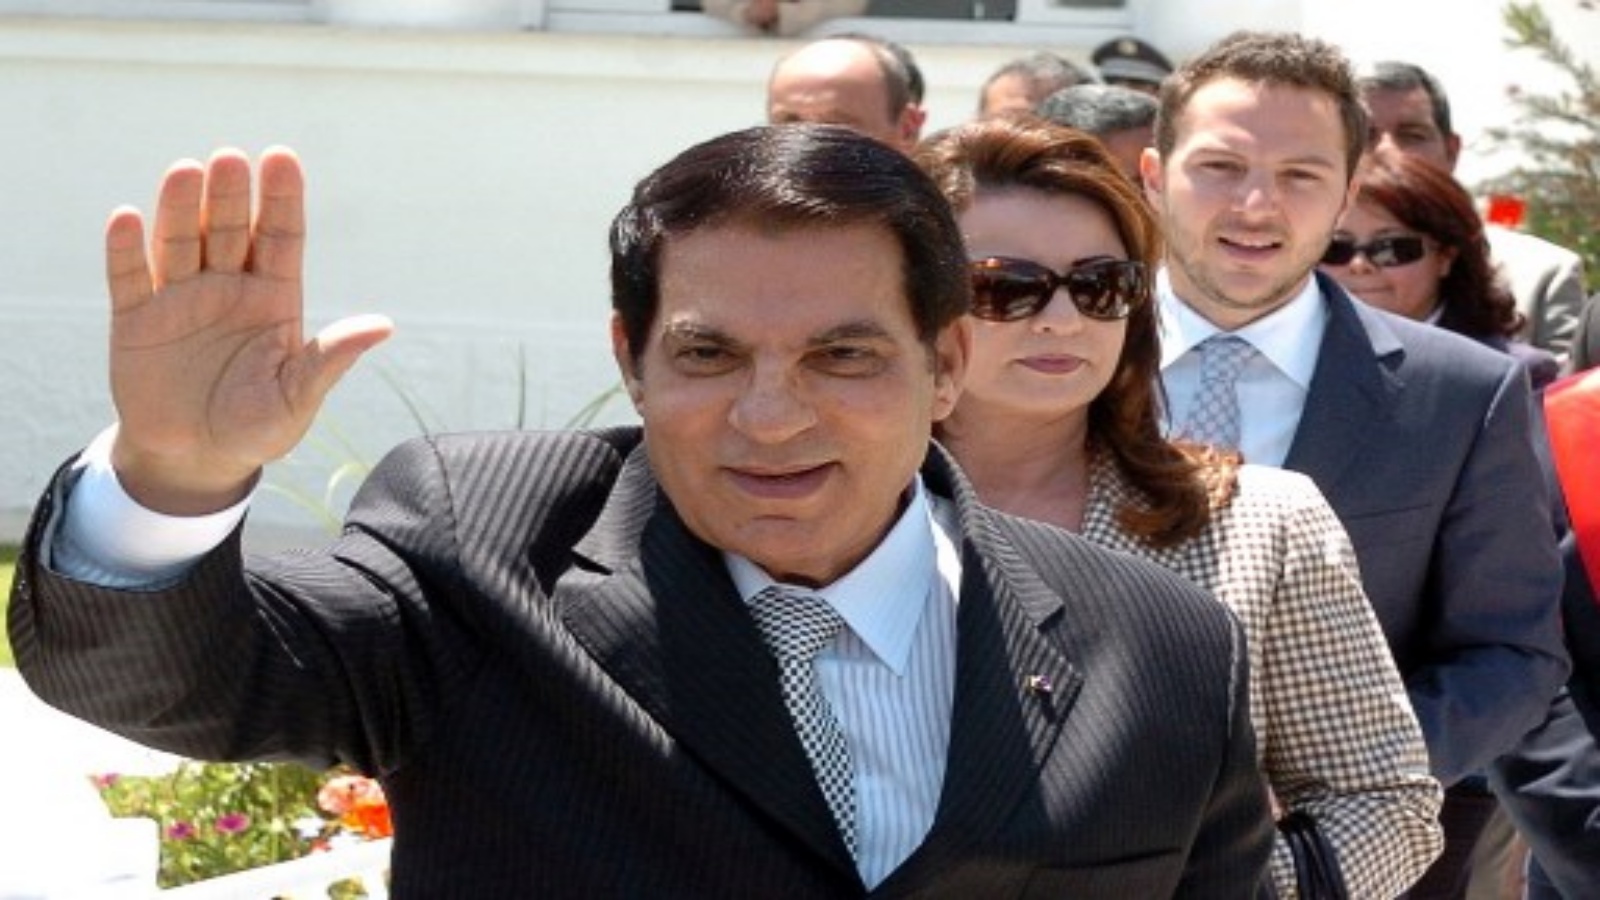 صورة التقطت في 9 مايو 2010 ، يلوح الرئيس التونسي آنذاك زين العابدين بن علي (في الأمام) للمهنئين بعد التصويت في الانتخابات البلدية إلى جانب زوجته ليلى (وسط) وابنه.رجل الأعمال التونسي صخر الماطري (إلى اليمين) في تونس